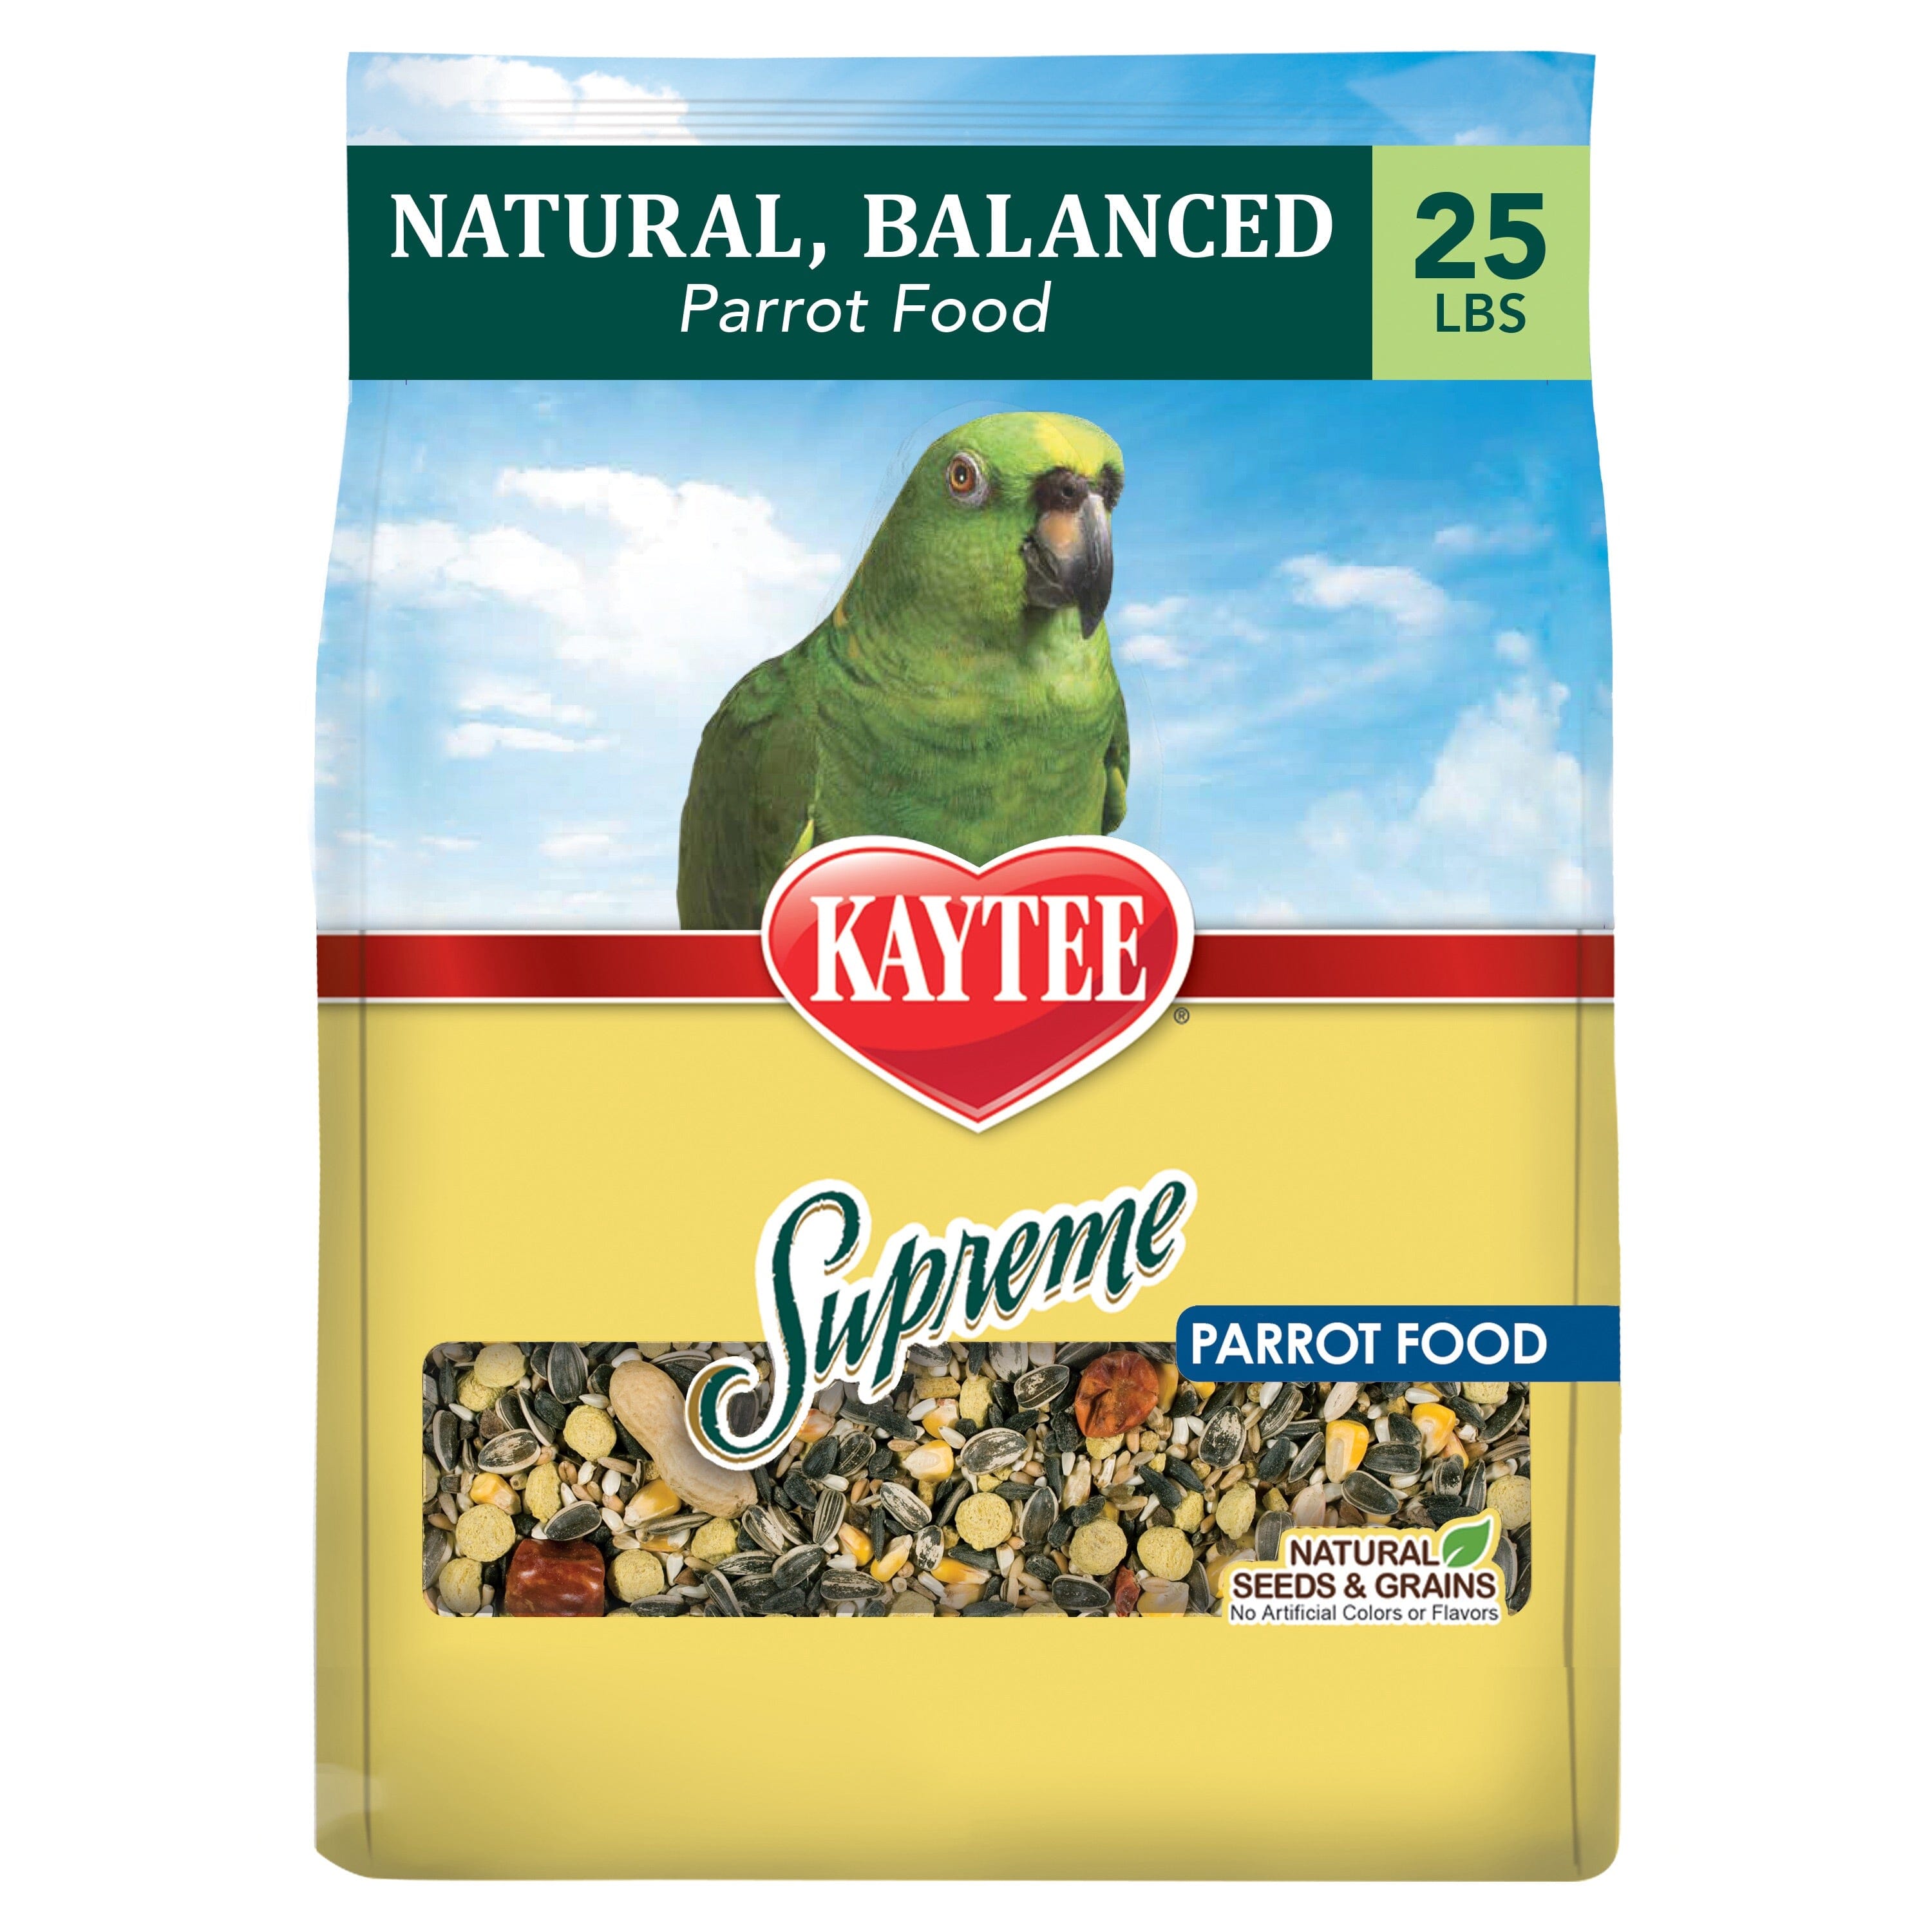 Kaytee Supreme Parrot Food - 25 lb Bag  